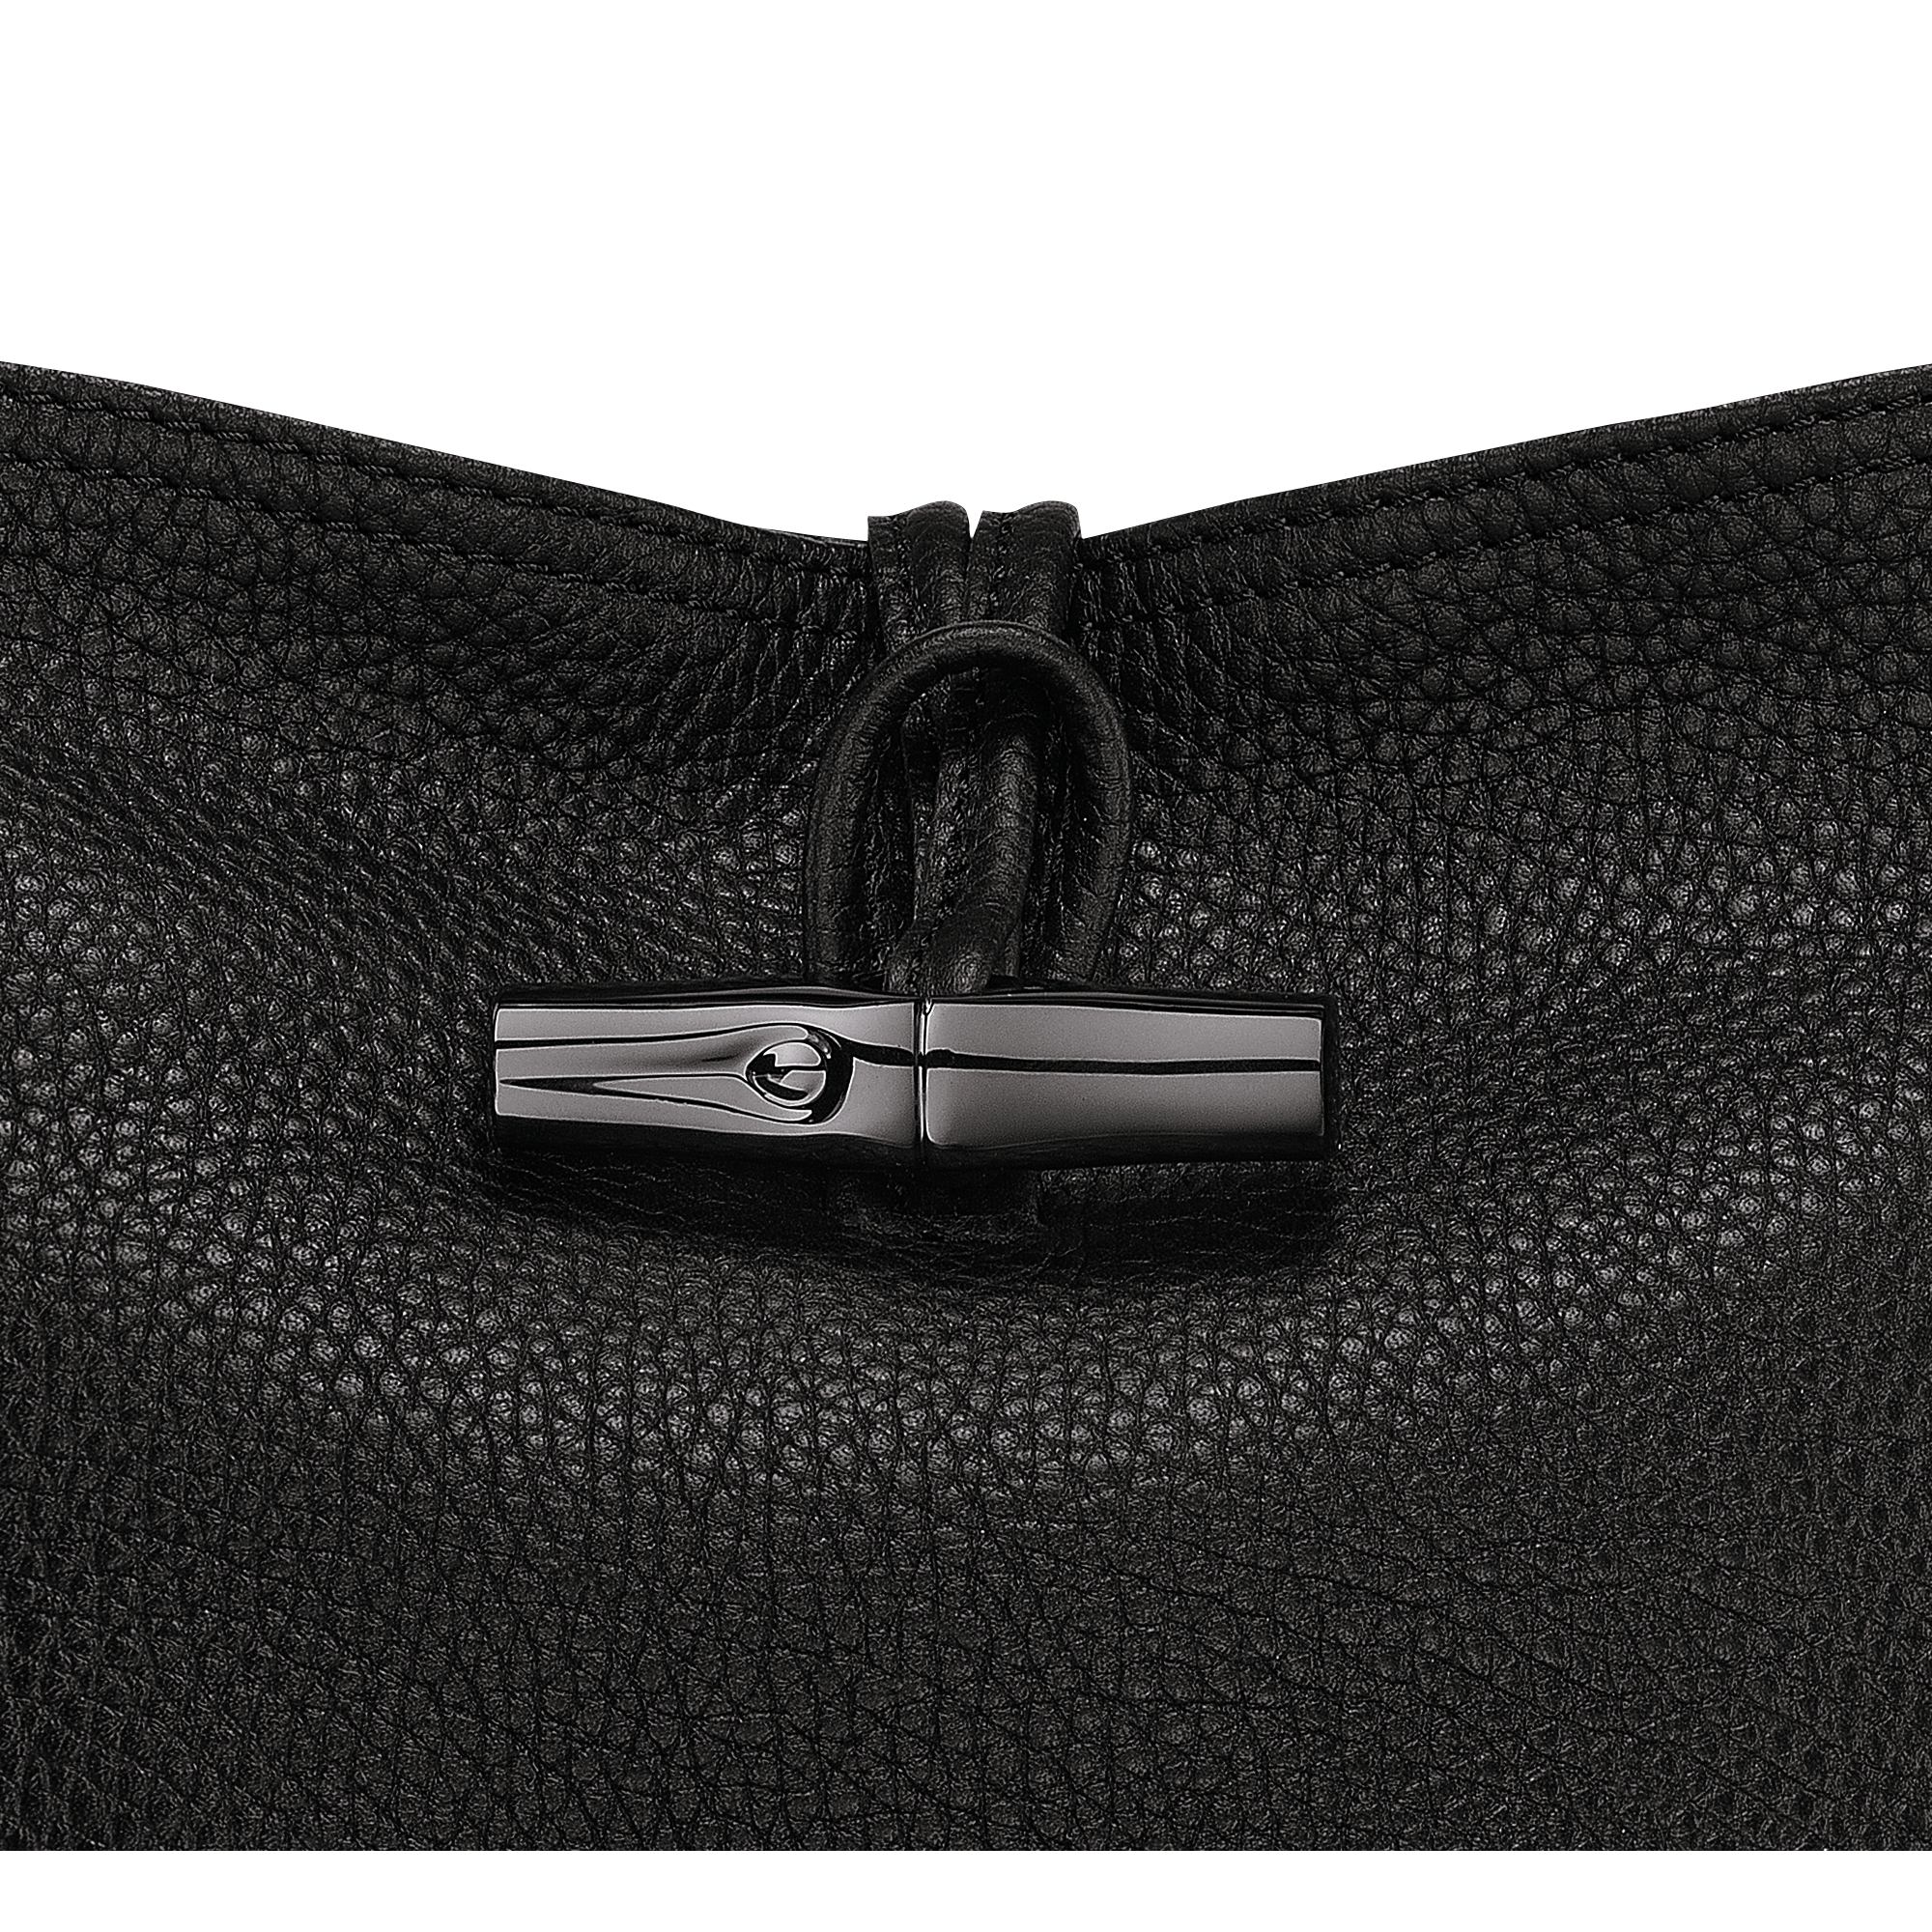 Roseau Essential L Tote bag Black - Leather (L2686968001